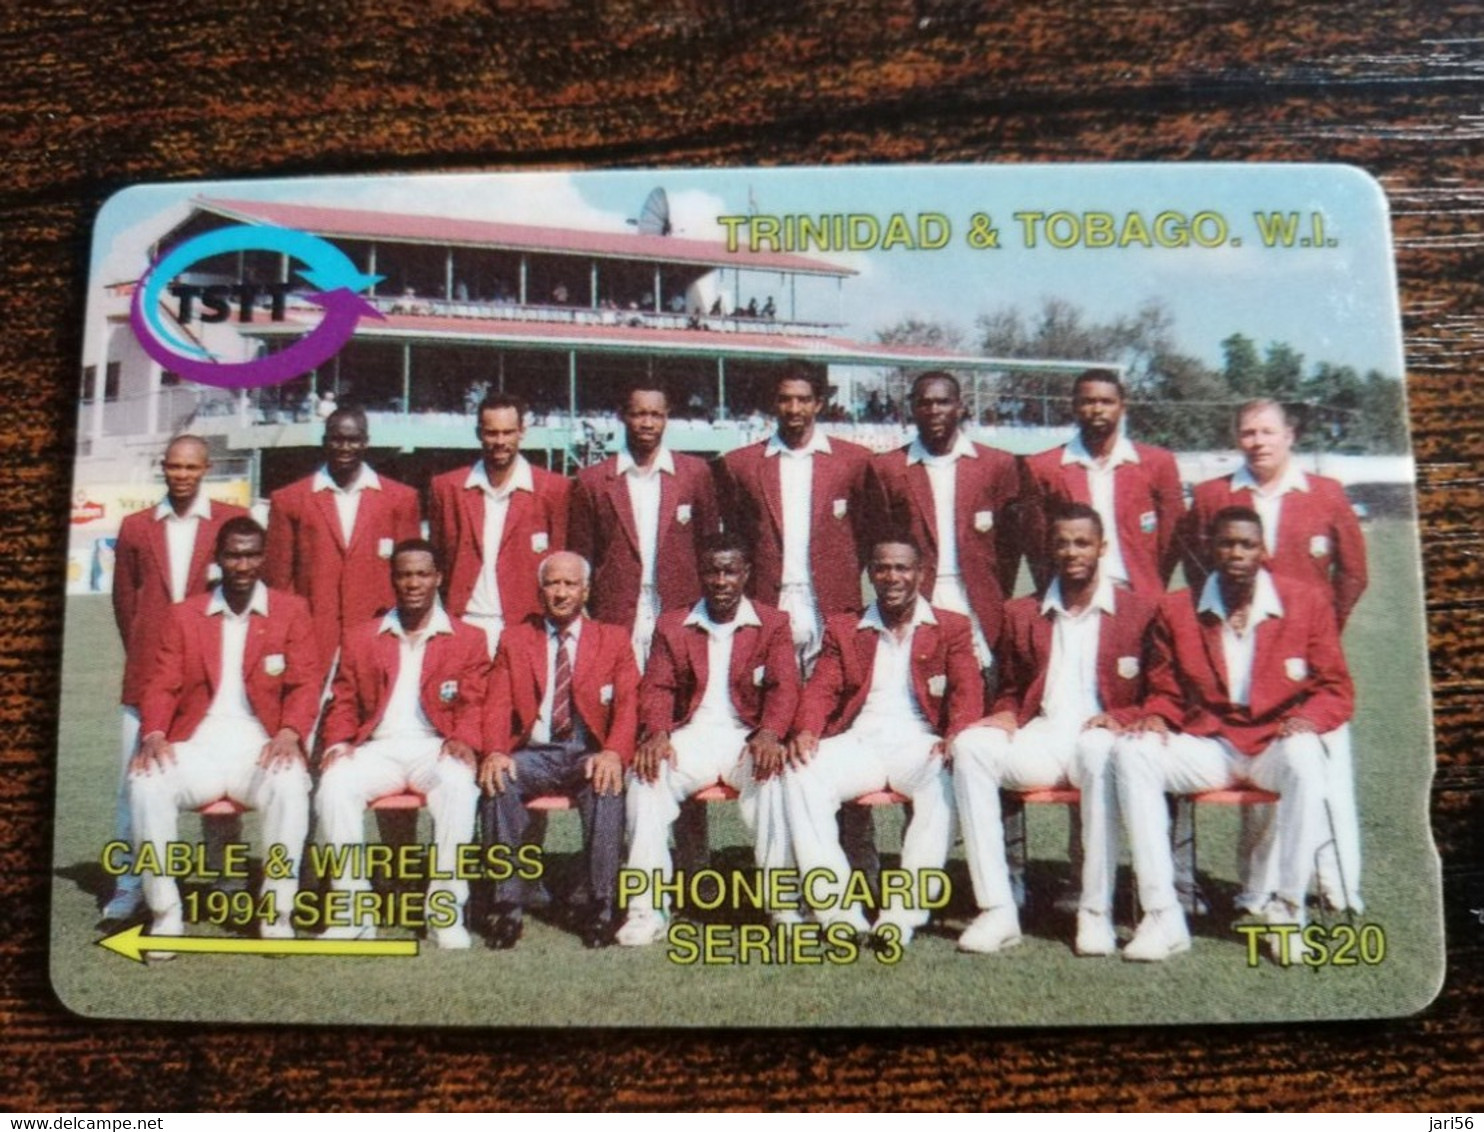 TRINIDAD & TOBAGO  GPT CARD    $20,-  12CCTB  CABLE & WIRELESS 1994 SERIES            Fine Used Card        ** 8876** - Trinidad & Tobago